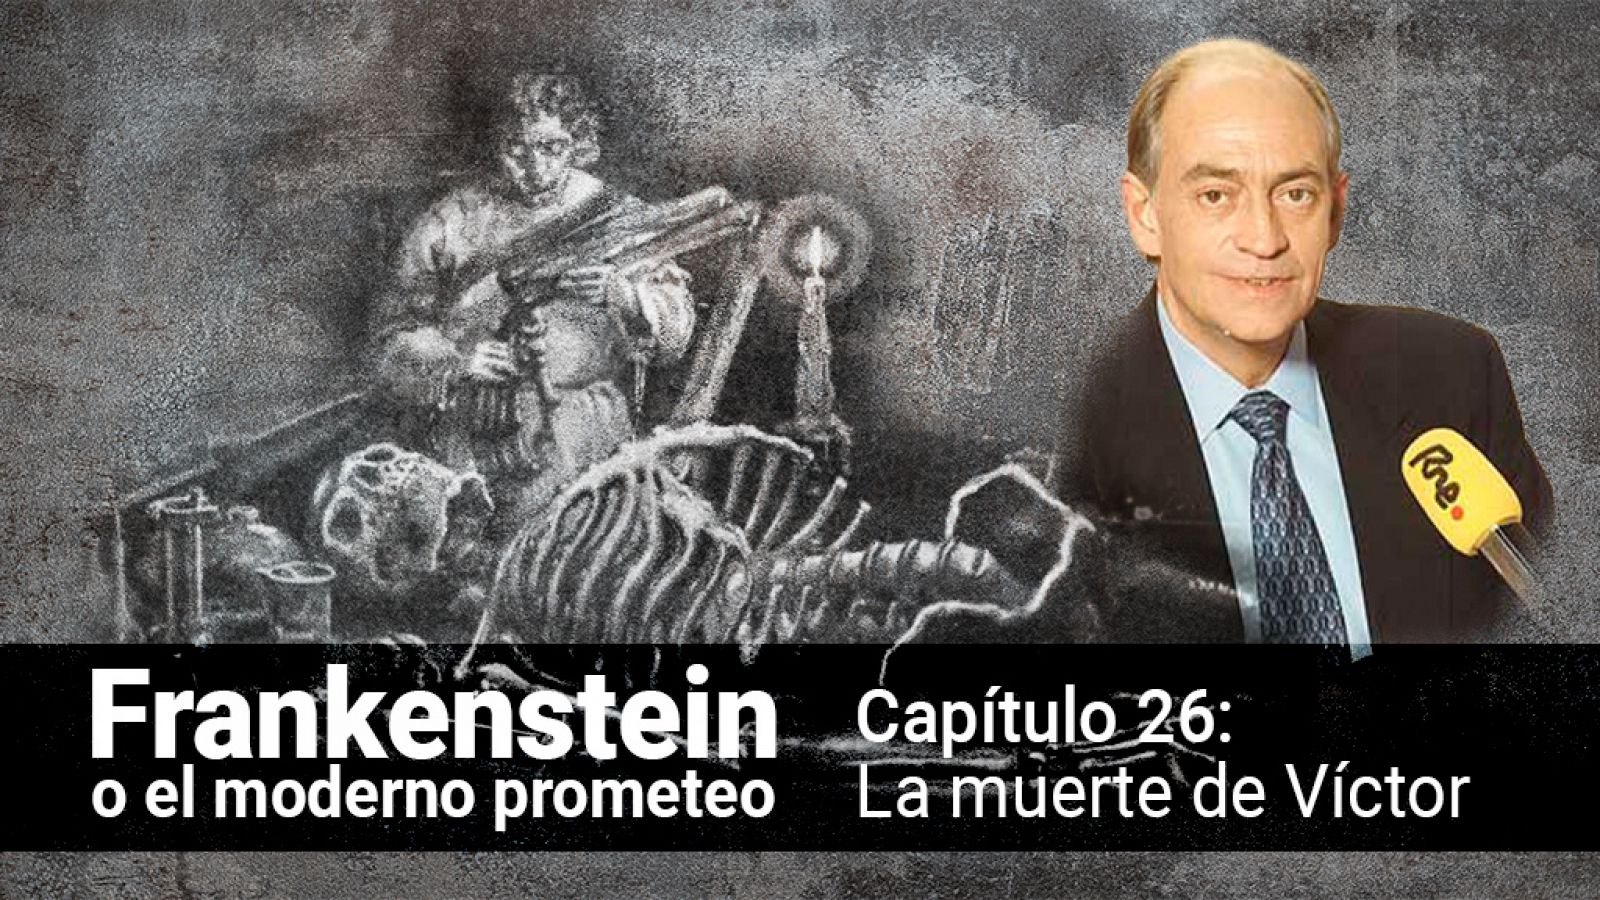 Frankenstein o el moderno Prometeo - Capítulo 26 y último: La muerte de Victor